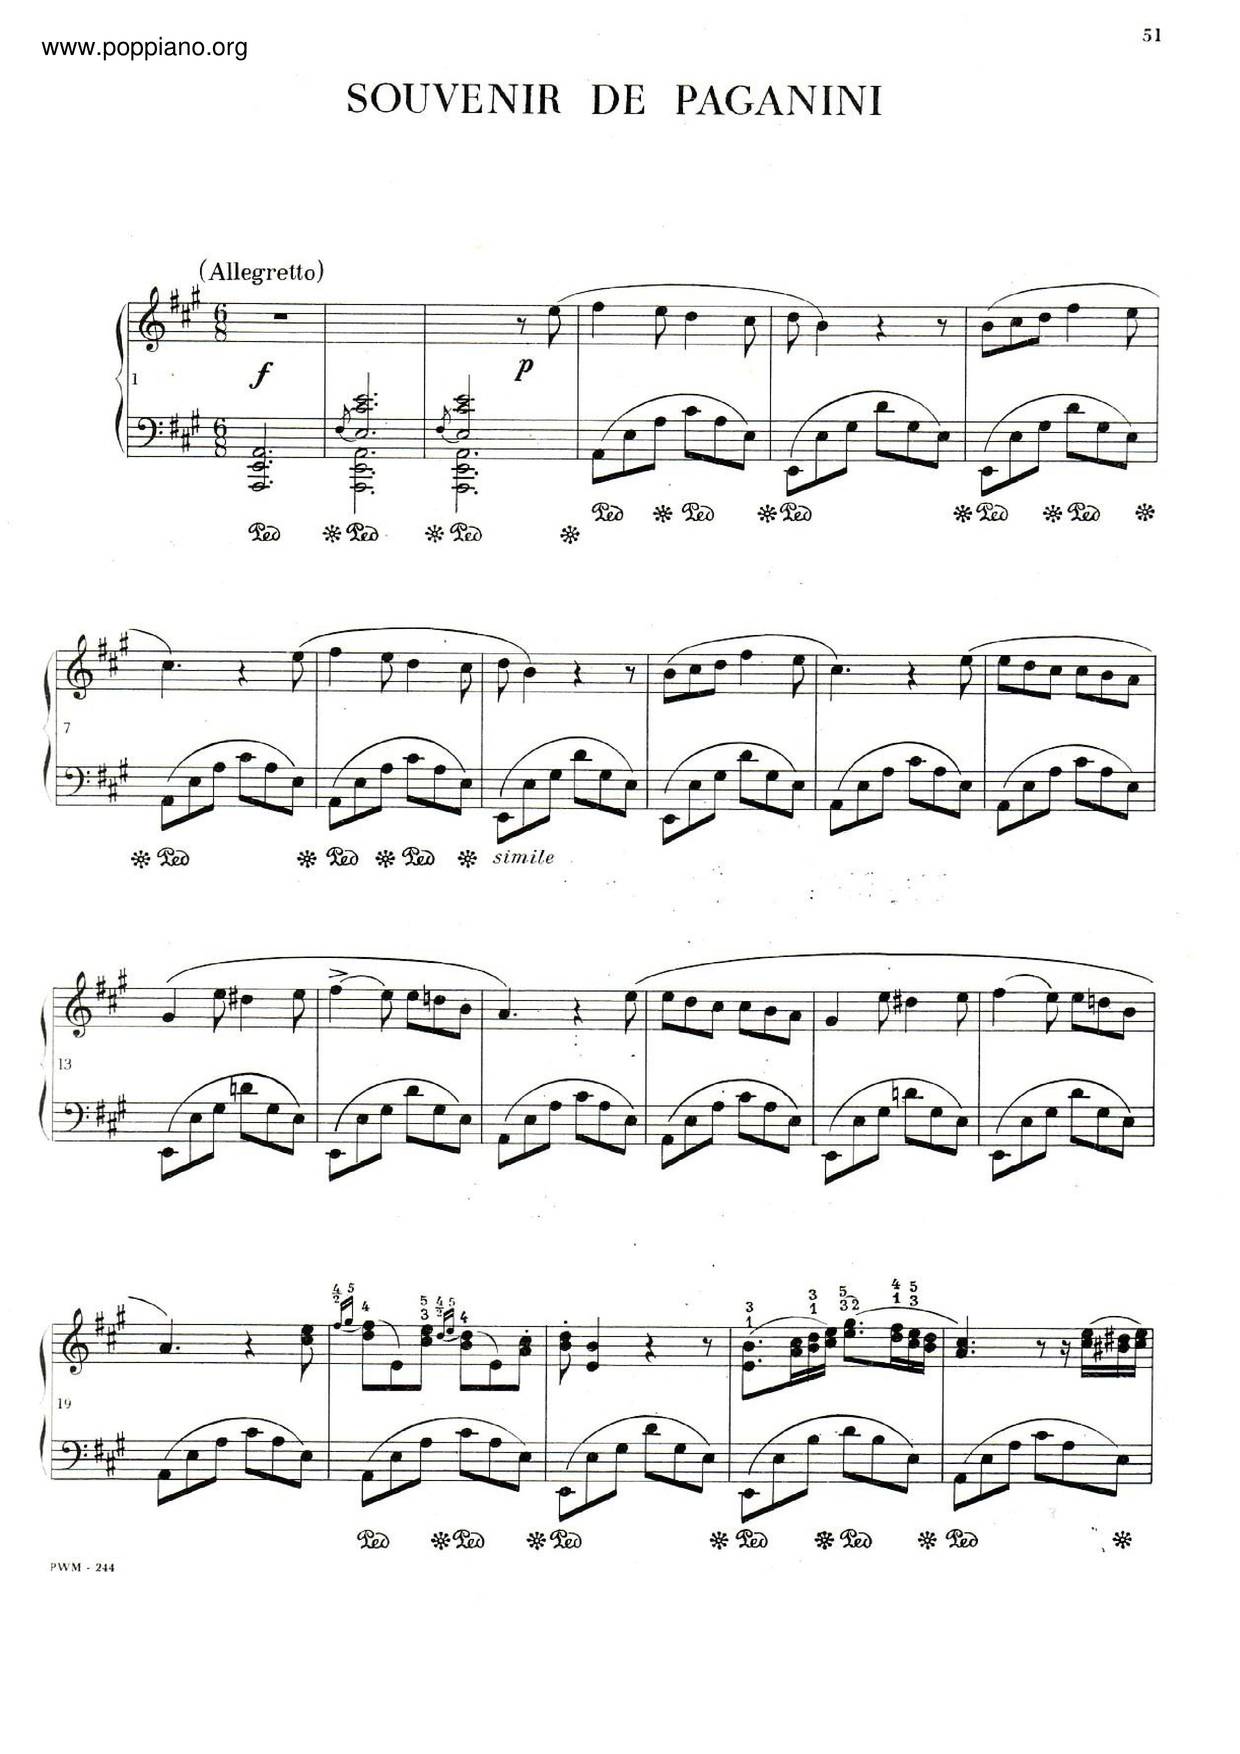 Variations In A Major 'Souvenir De Paganini', B. 37 Score